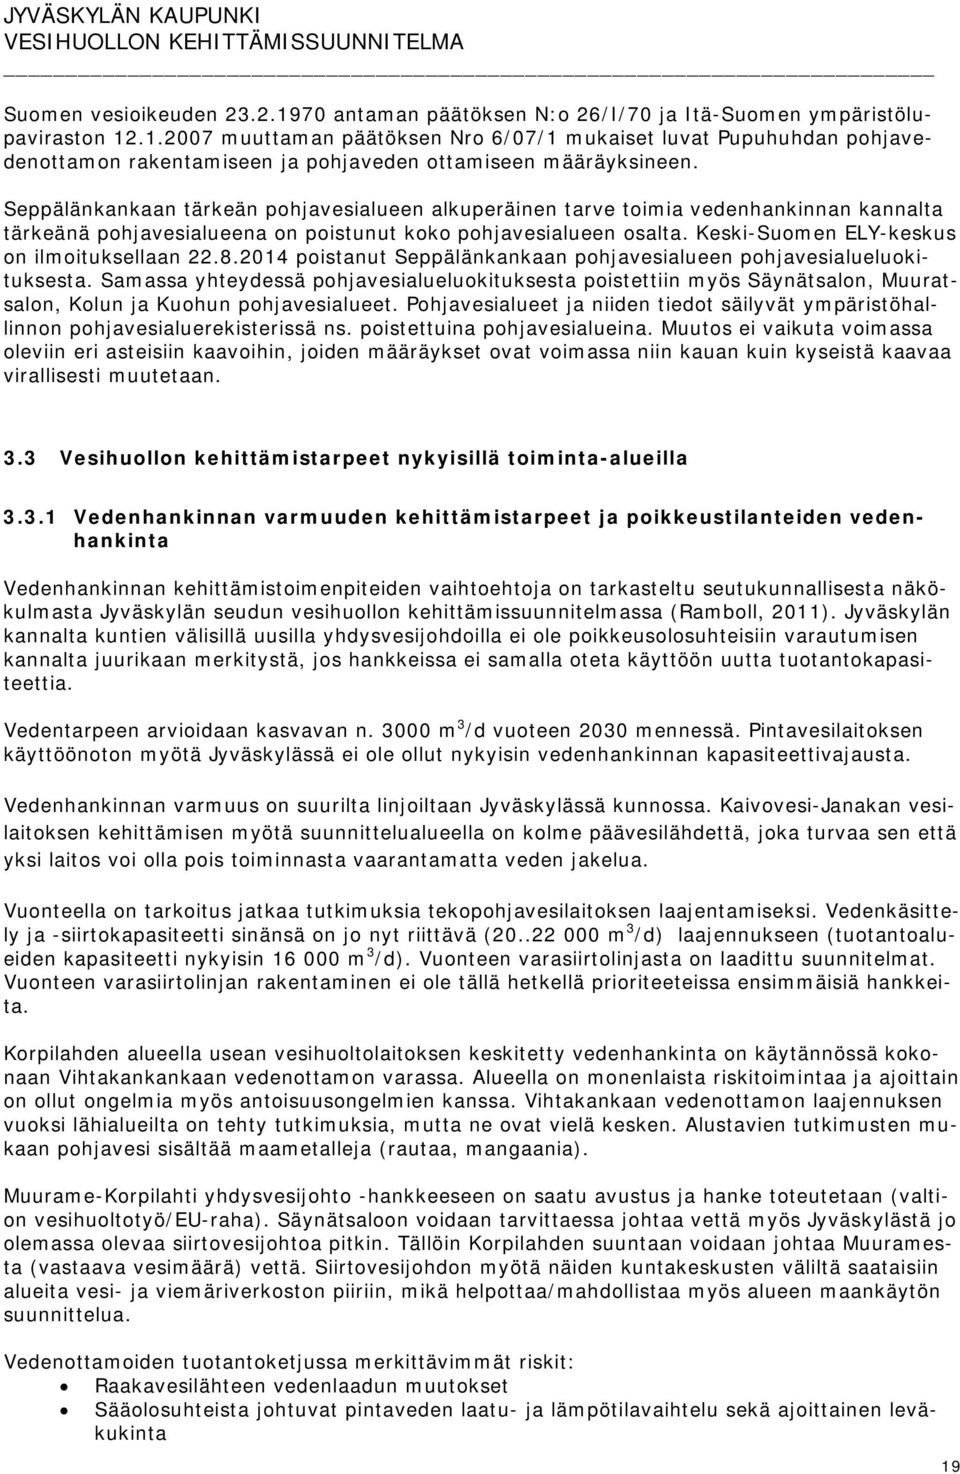 Keski-Suomen ELY-keskus on ilmoituksellaan 22.8.2014 poistanut Seppälänkankaan pohjavesialueen pohjavesialueluokituksesta.